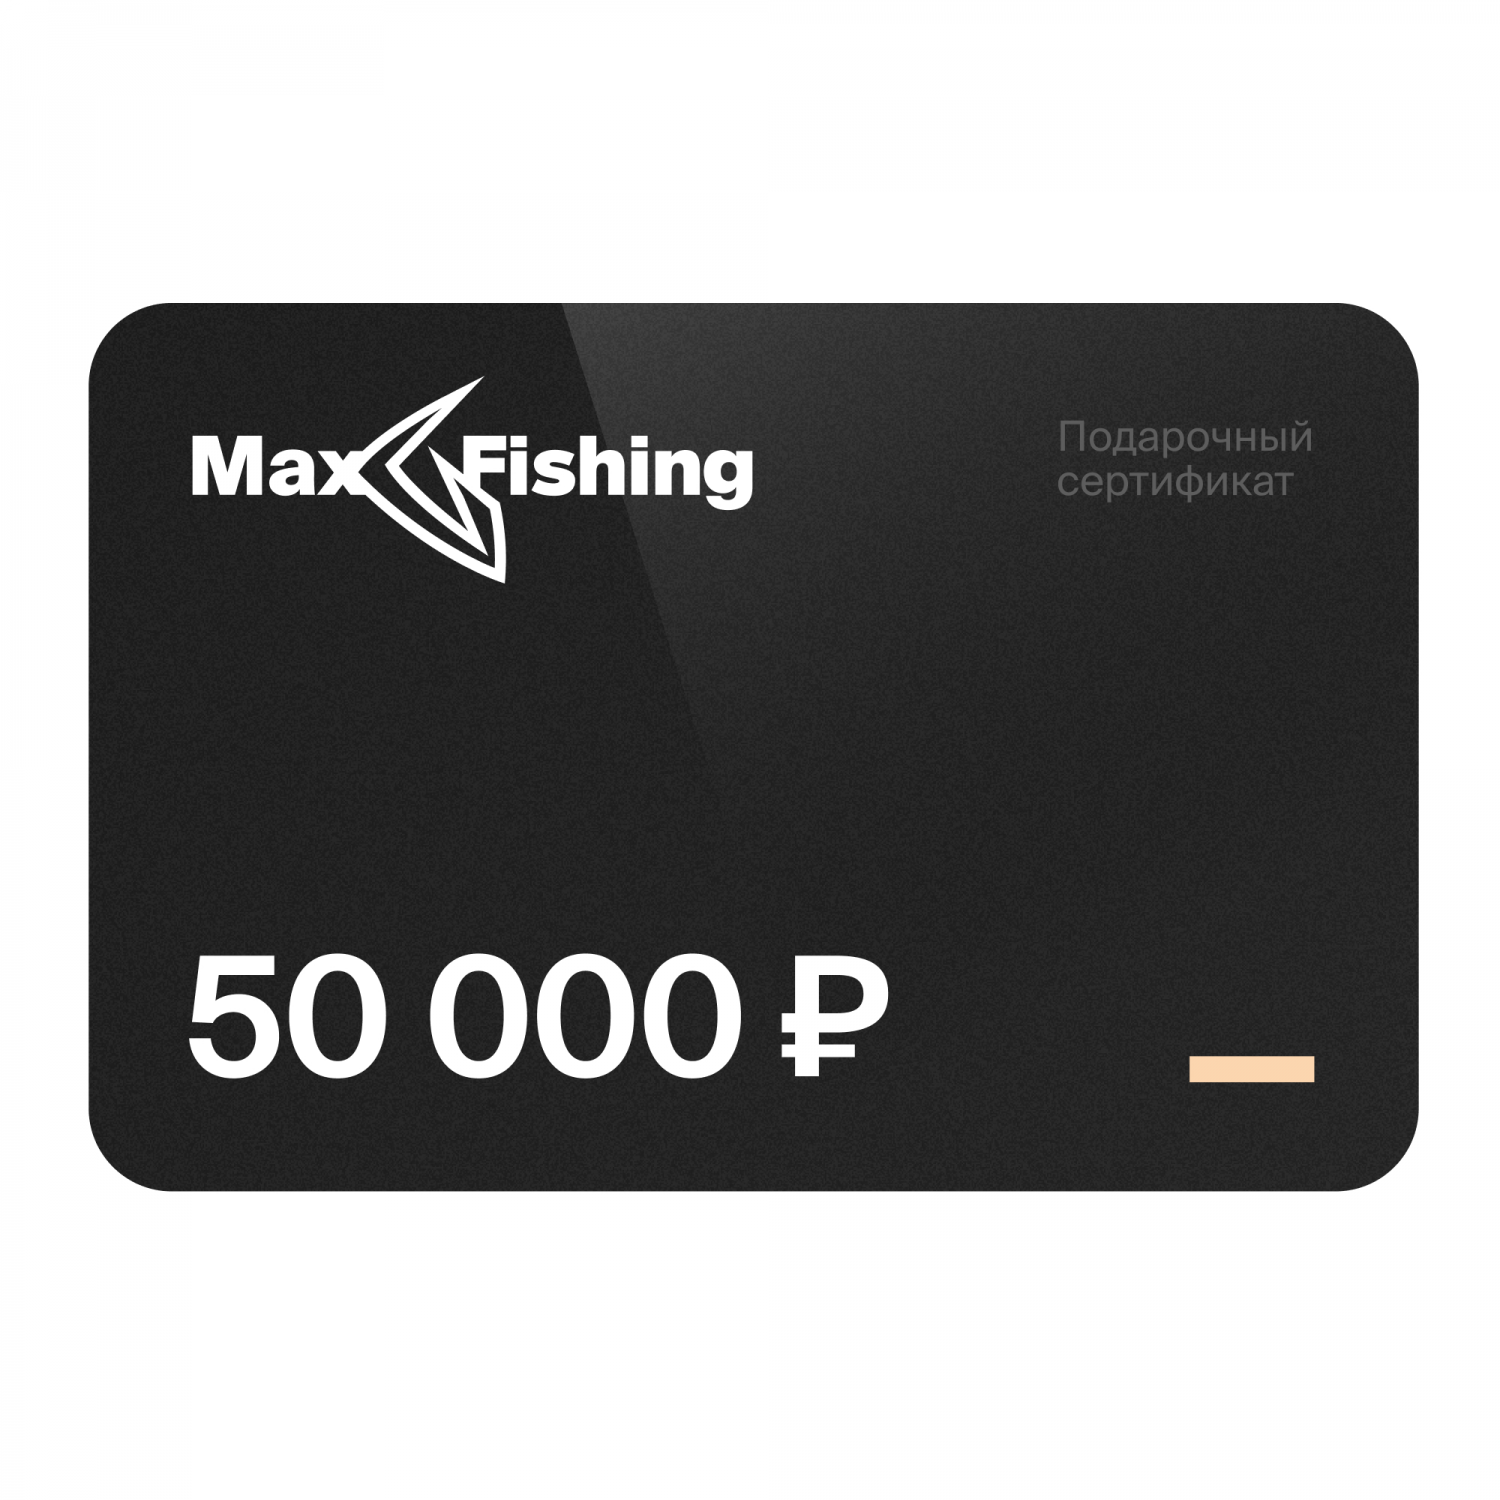 Подарочный сертификат MaxFishing 50 000 ₽ подарочный сертификат на 5 000 рублей